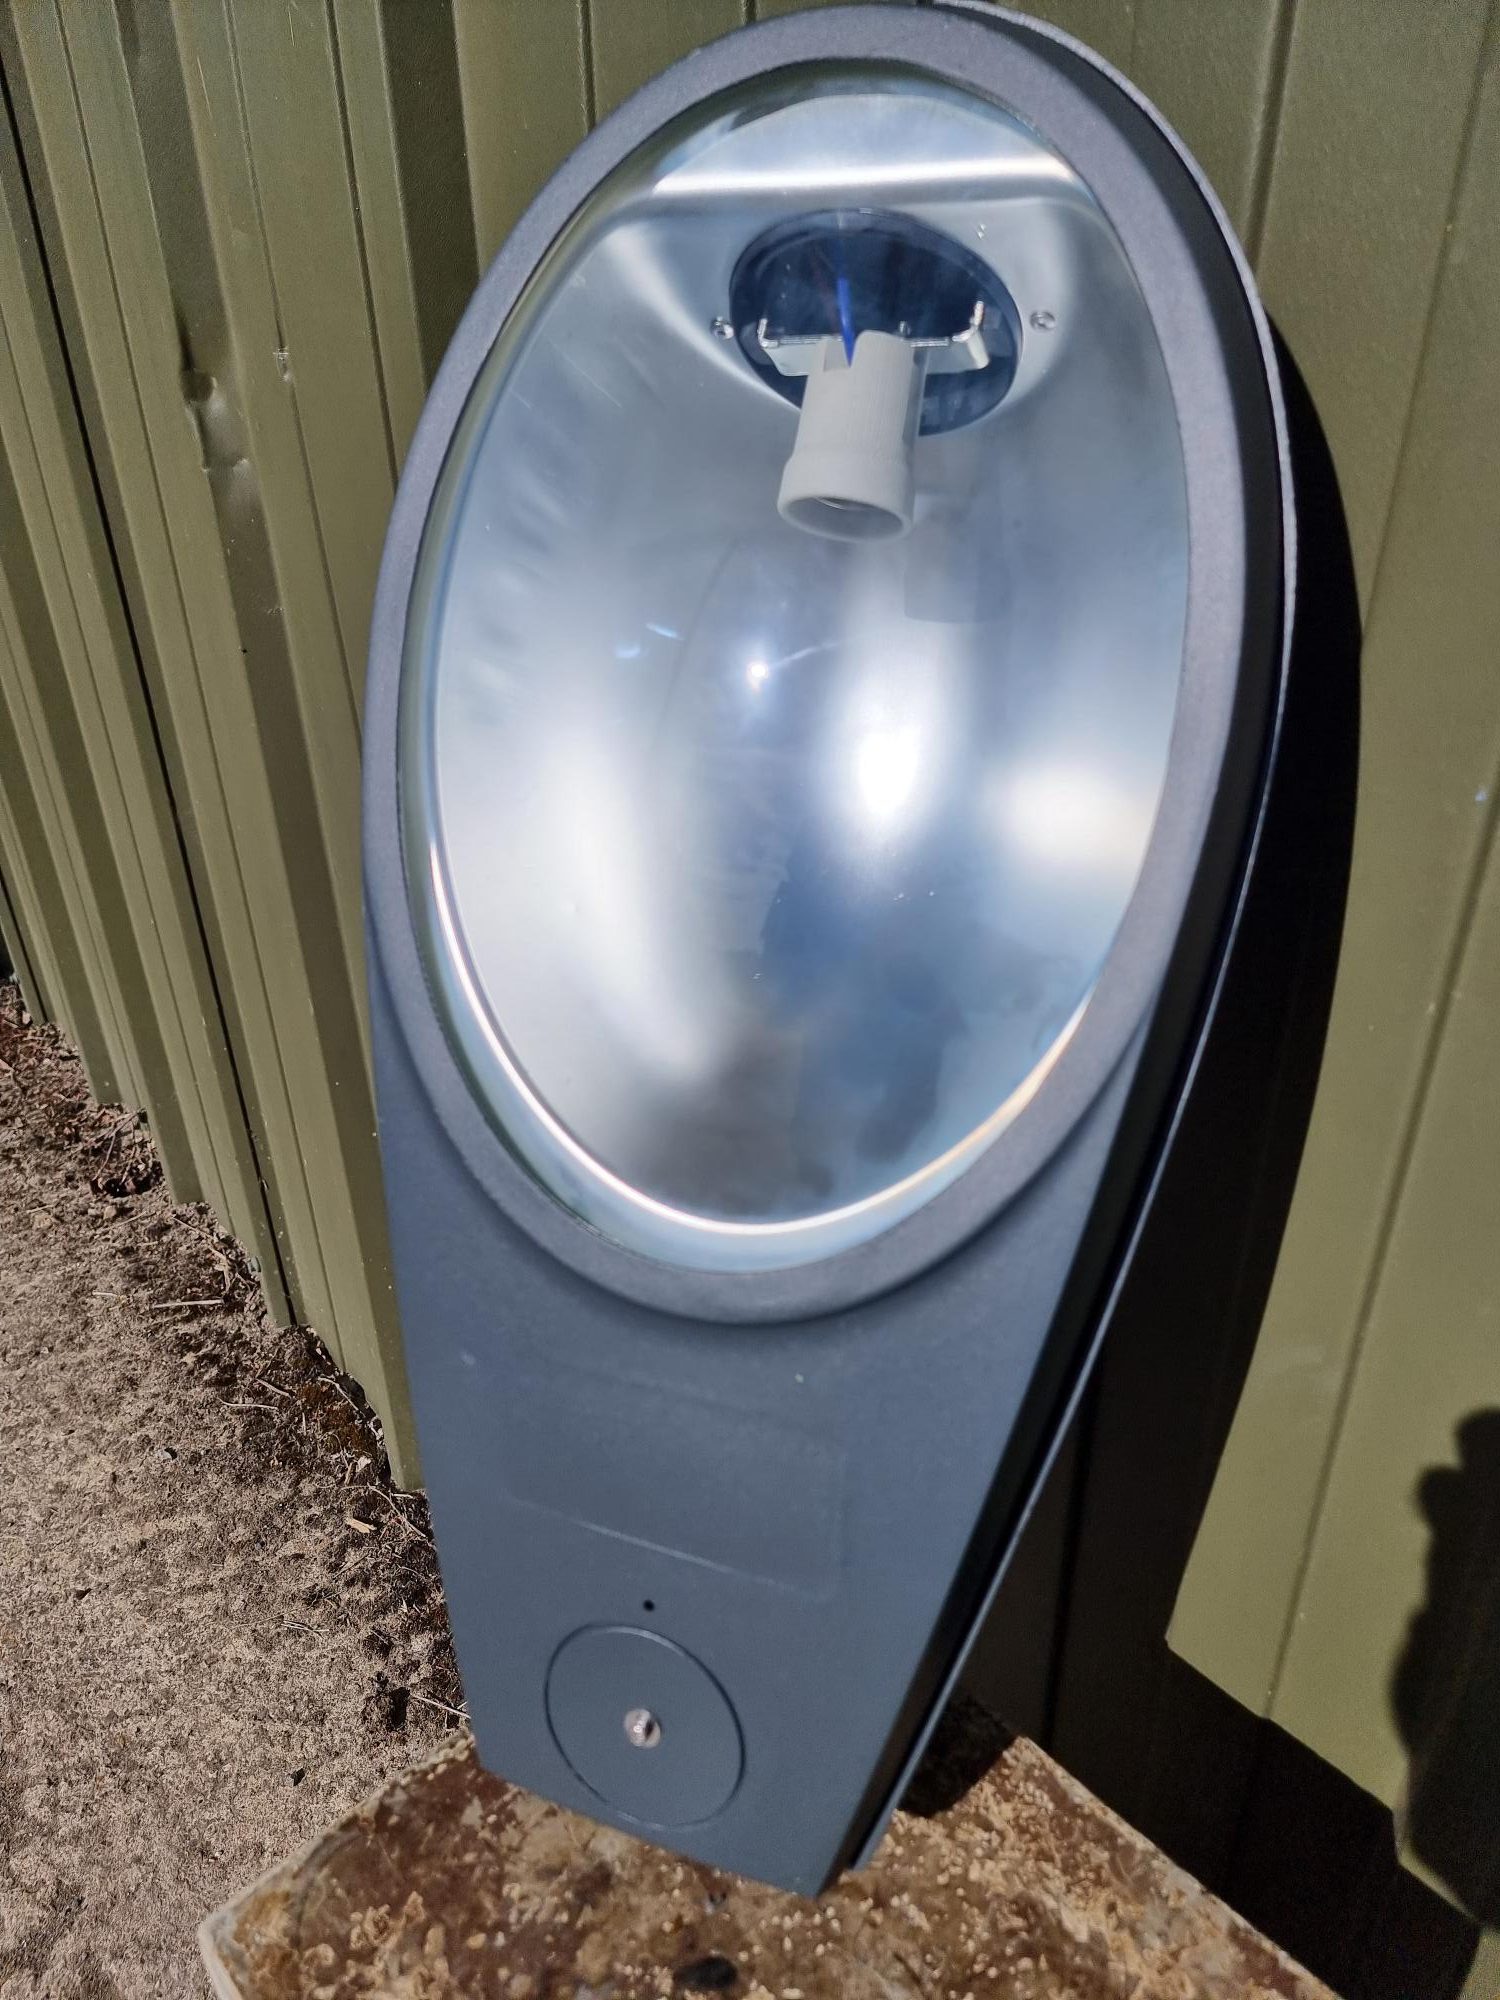 Kingfisher Lighting Borough lights – Brand New in box